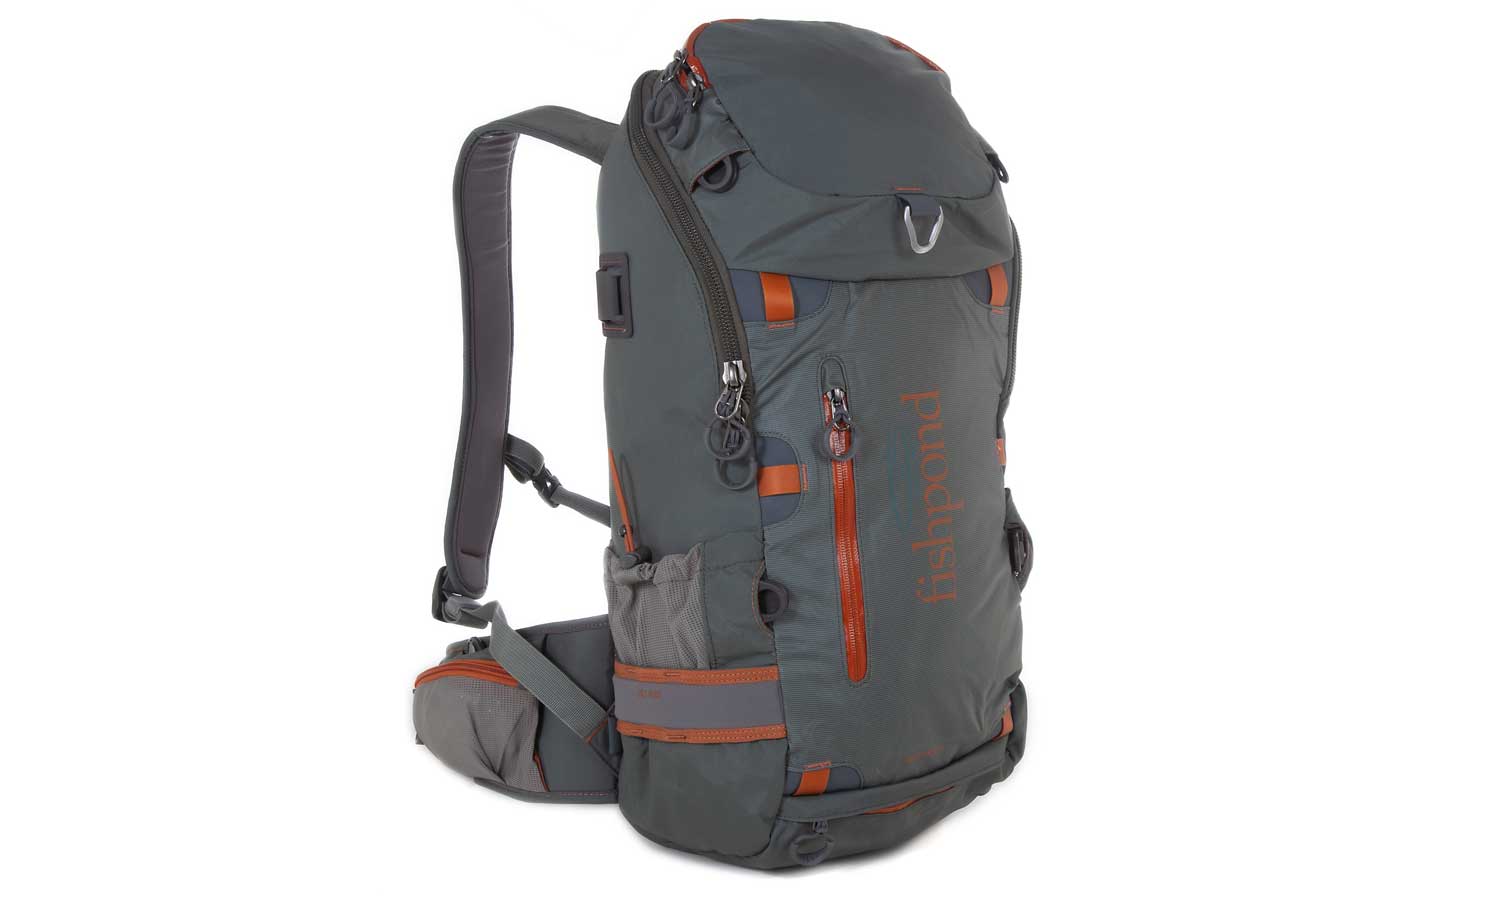 Fishpond Firehole Backpack